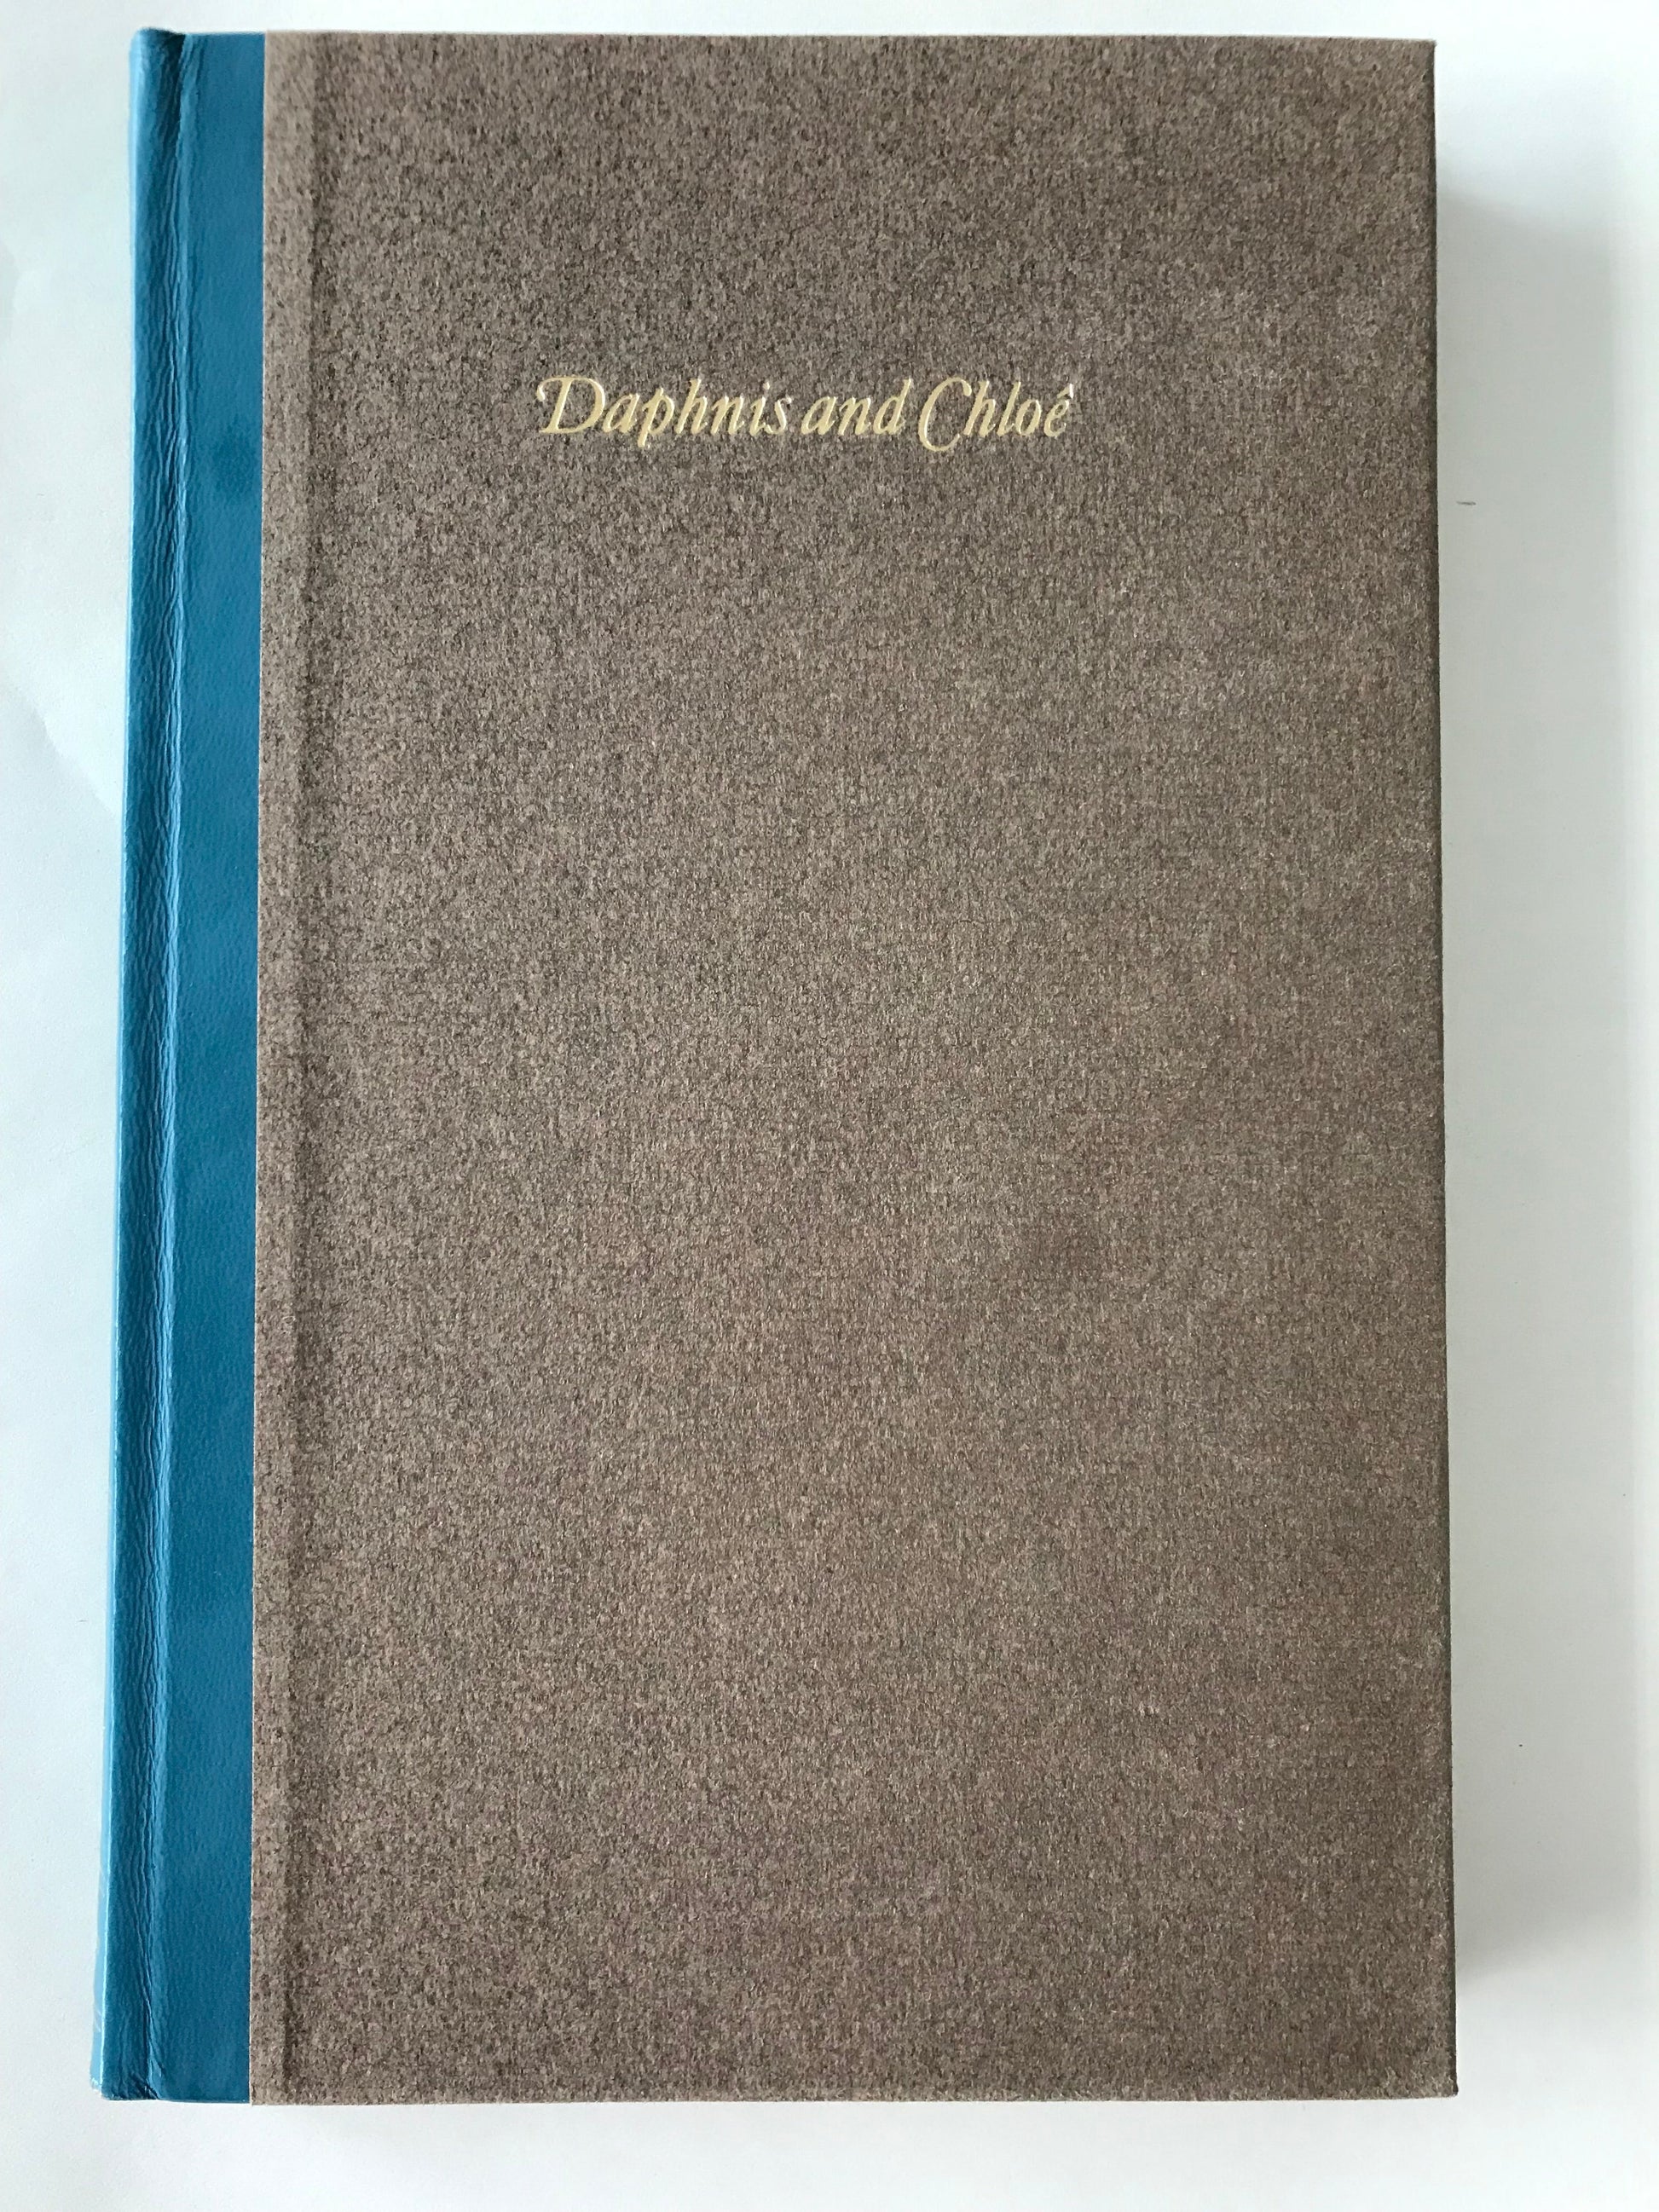 DAPHNIS AND CHLOE - BY LONGUS  (MYTHOLOGY) BooksCardsNBikes